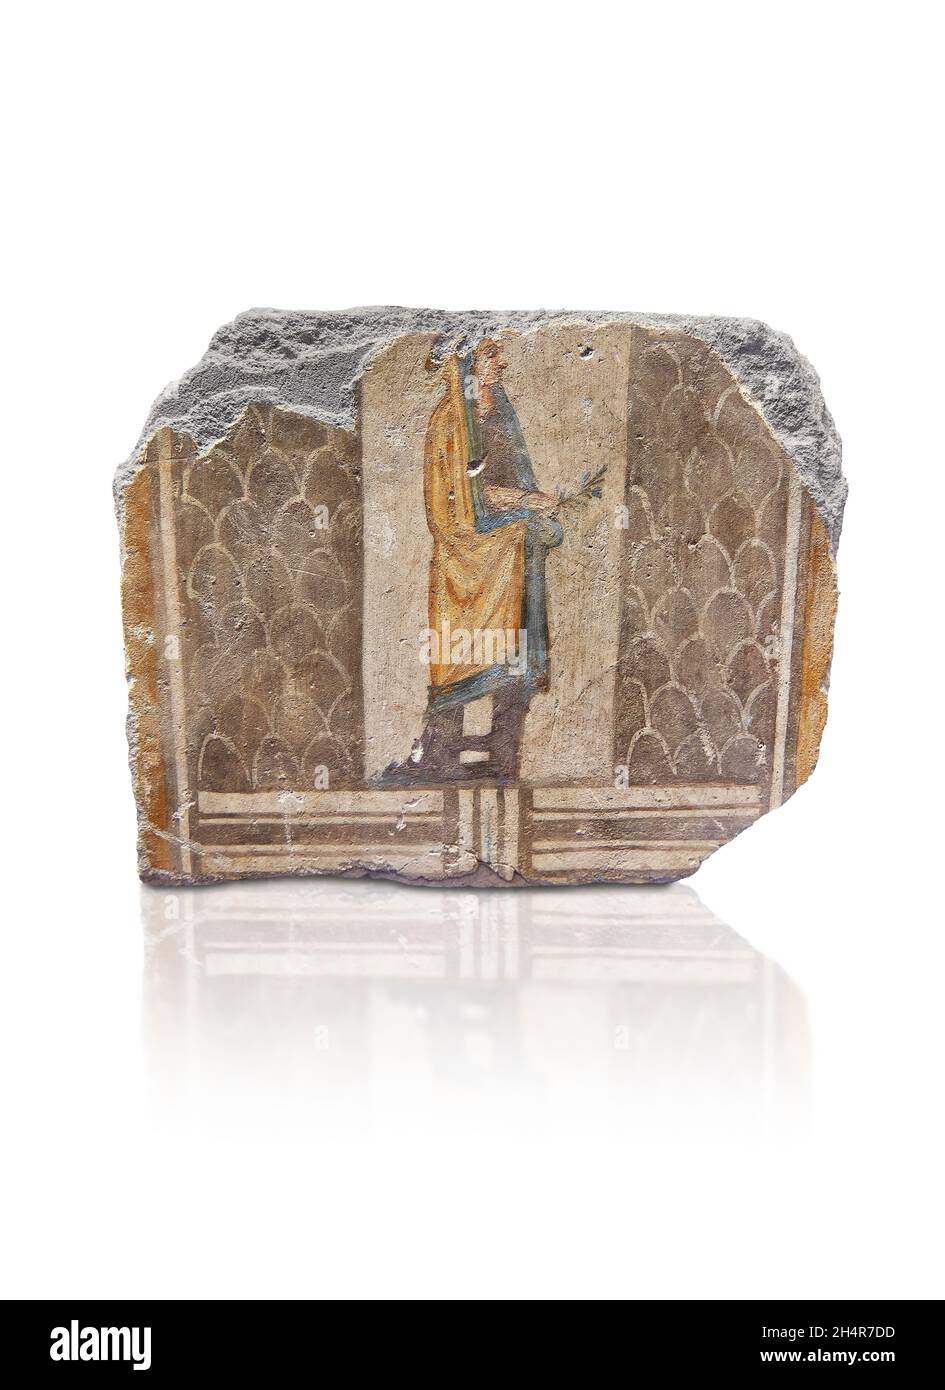 Ptolomaic ägyptische Grabwand Wandgemälde Fresko, 200-100 v. Chr., Alexandria, Louvre Museum MND 2287 oder Ma 3619. Setting: Beerdigungsszene; Frau trägt einen Chiton, Stockfoto